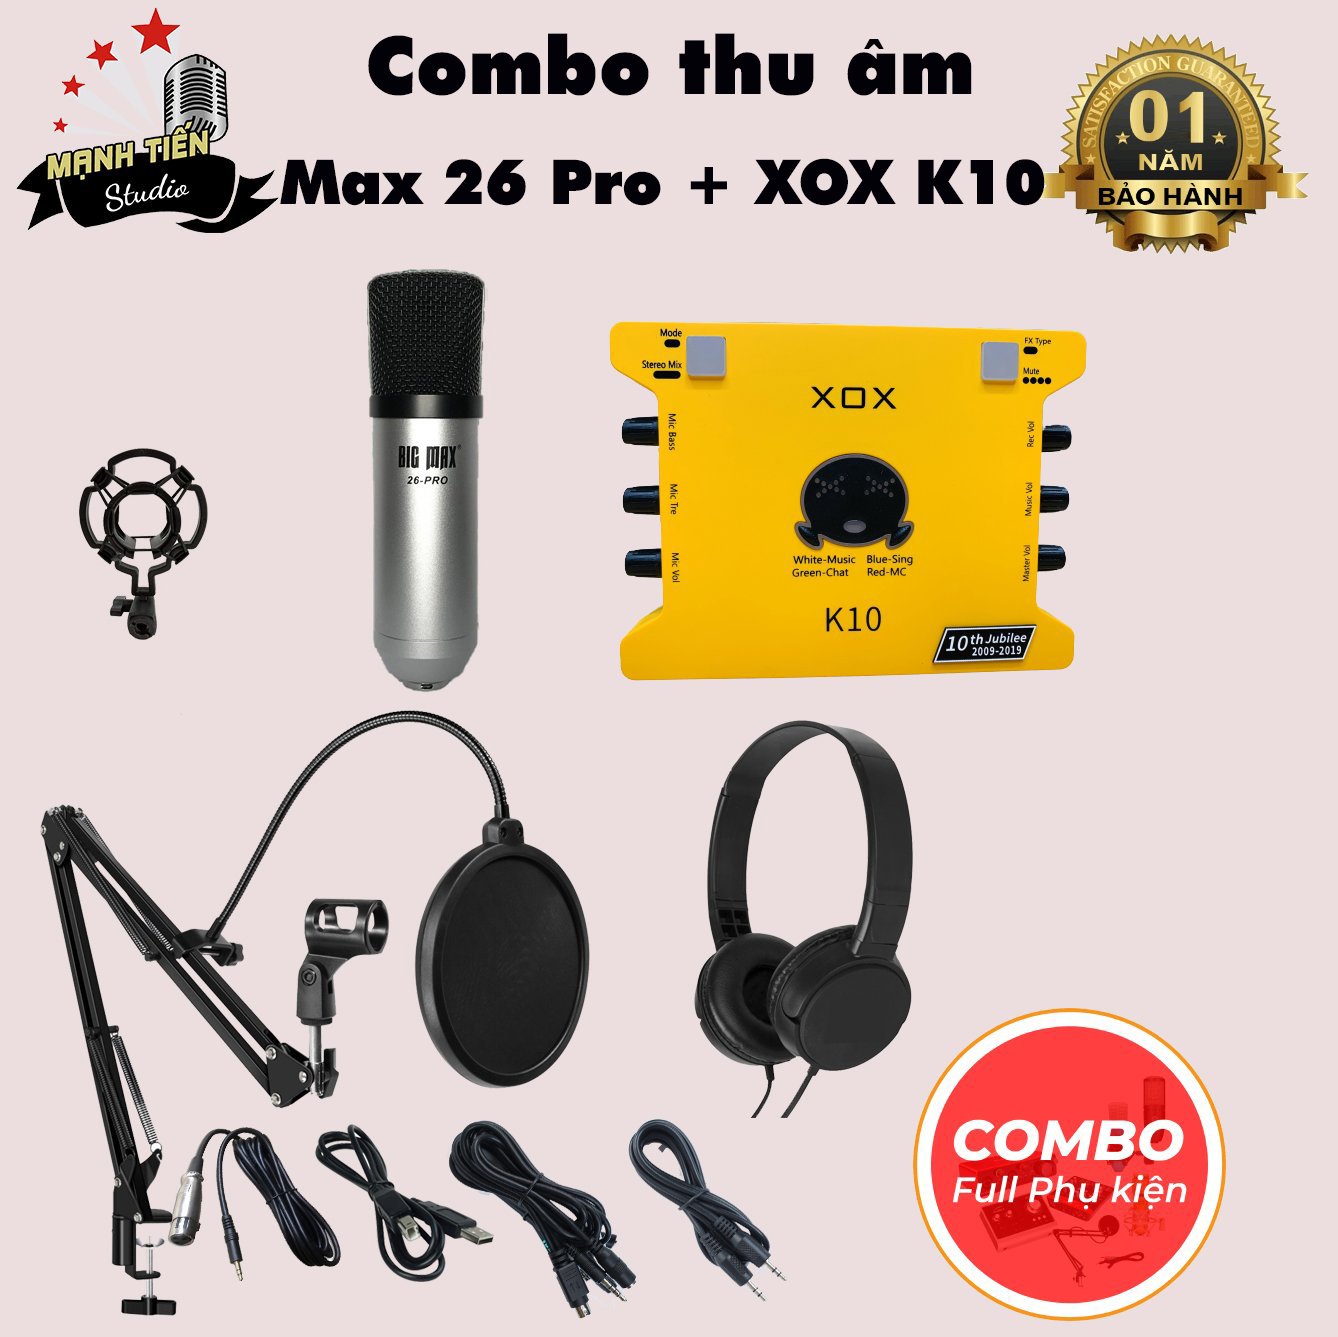 Bộ Combo livestream Max 26 Pro + Sound card XOX K10 jubilee - Kèm full phụ kiện kẹp micro, màng lọc, tai nghe chụp tai - Thu âm, livestream, karaoke online chuyên nghiệp trên cả điện thoại lẫn máy tính - Chính hãng